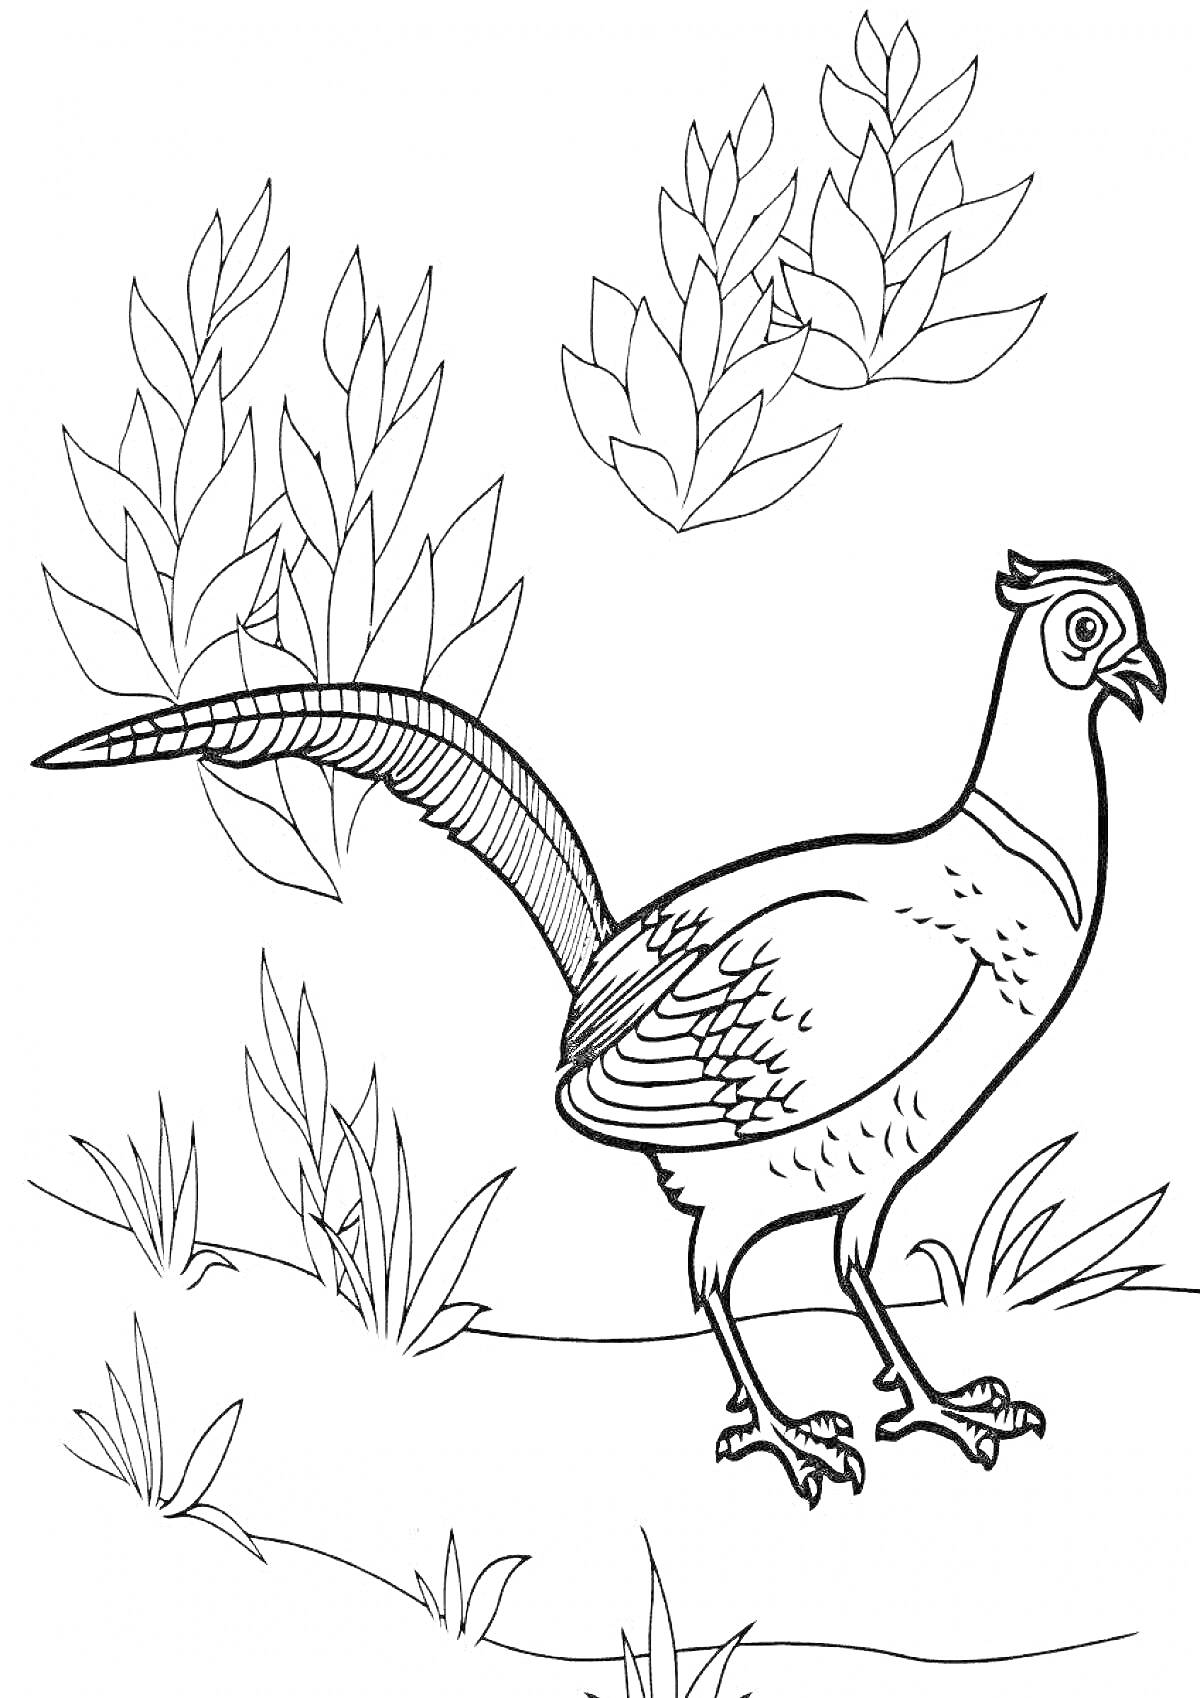 Раскраска Раскраска с изображением фазана, стоящего на земле среди травы и листьев